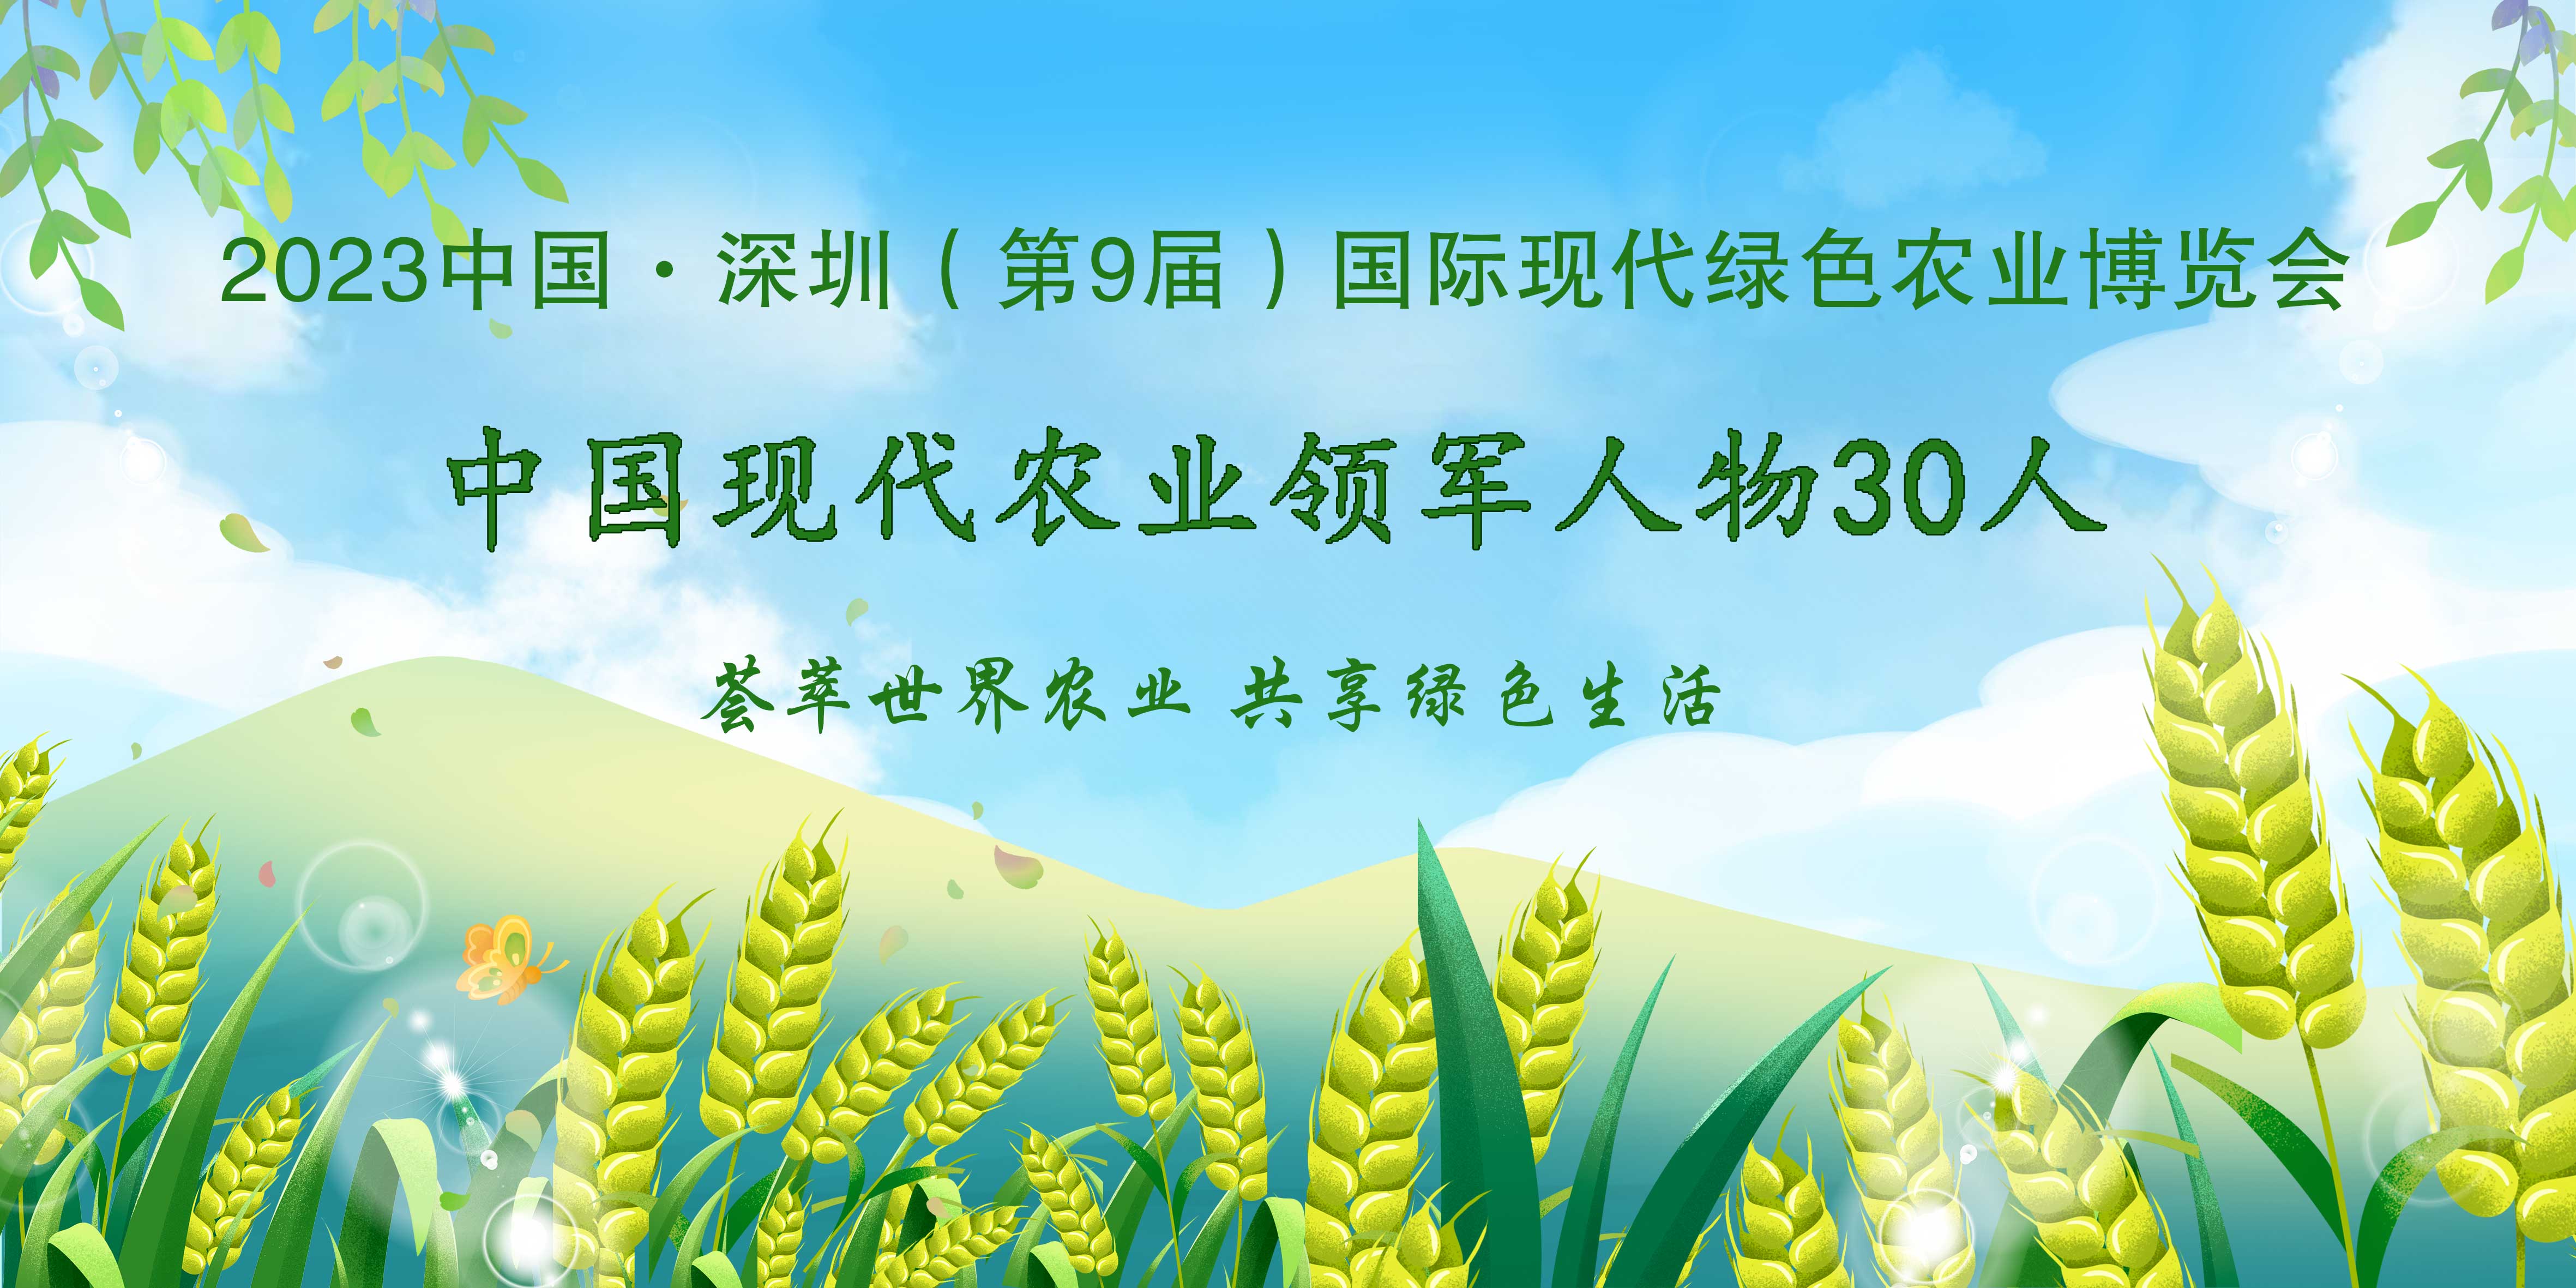 【农业领军人物】2023第9届深圳绿博会——中国现代农业领军人物30人，开始全国海选啦！